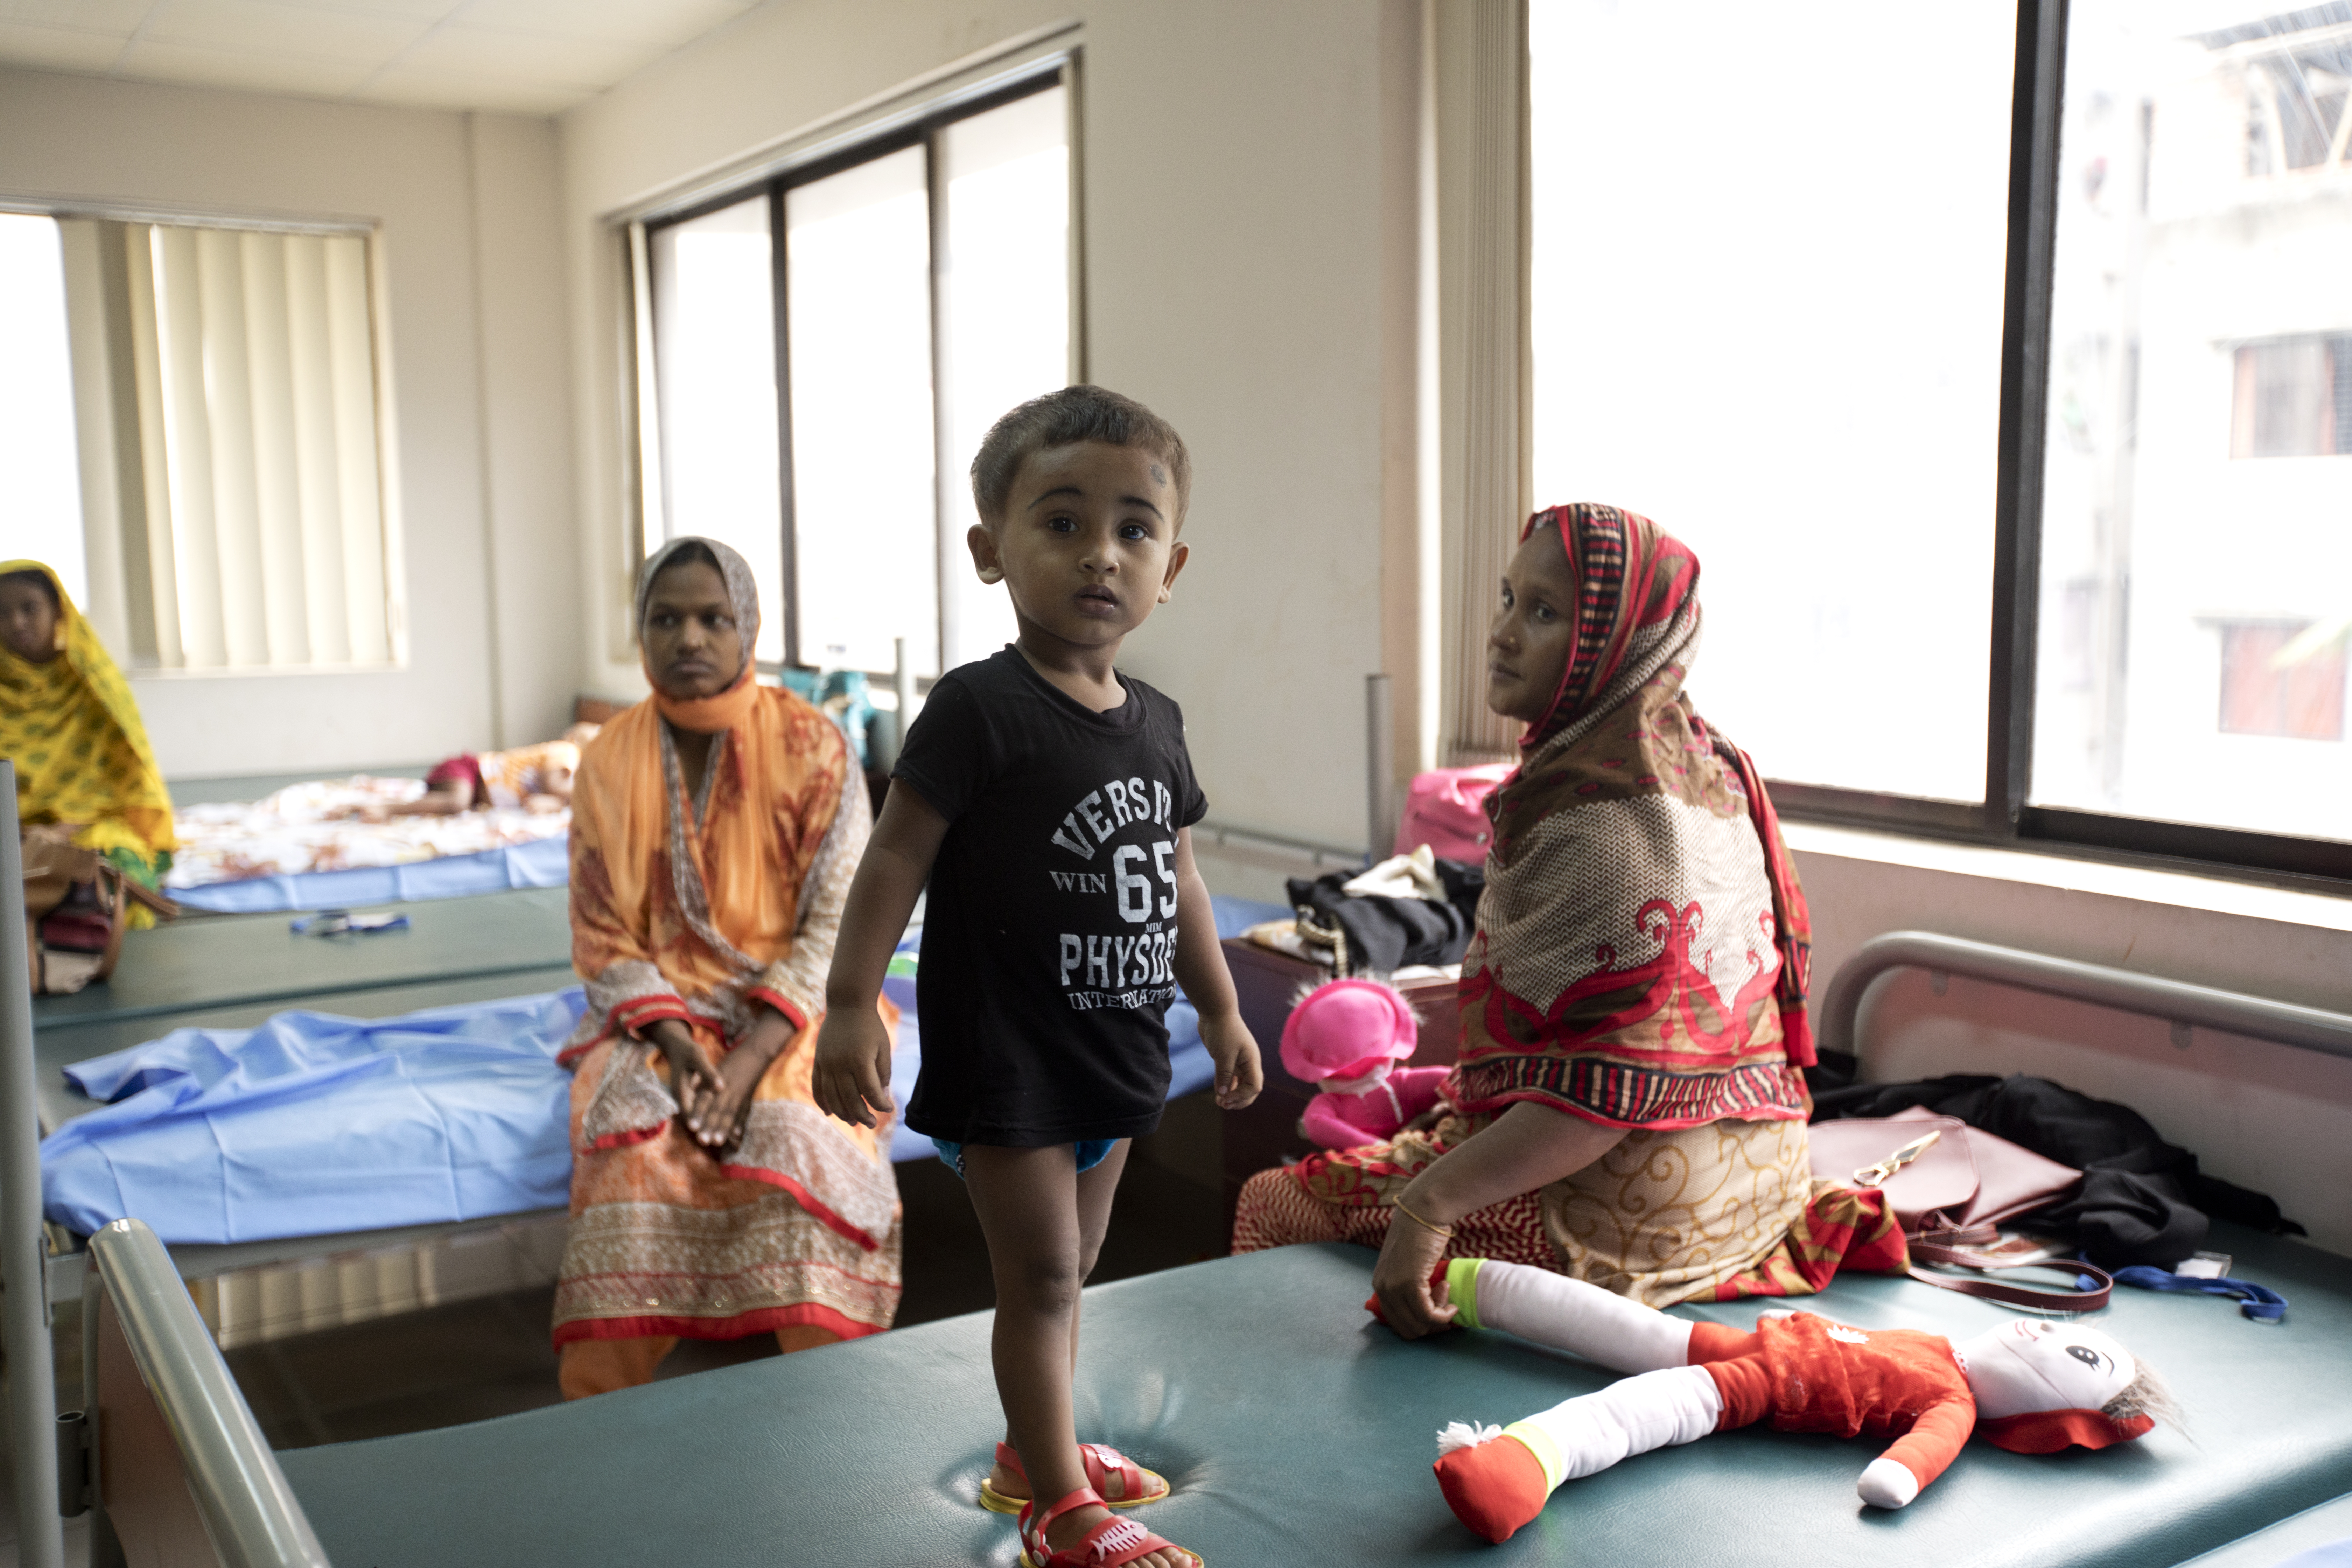 Young boy at a hospital in Bangladesh